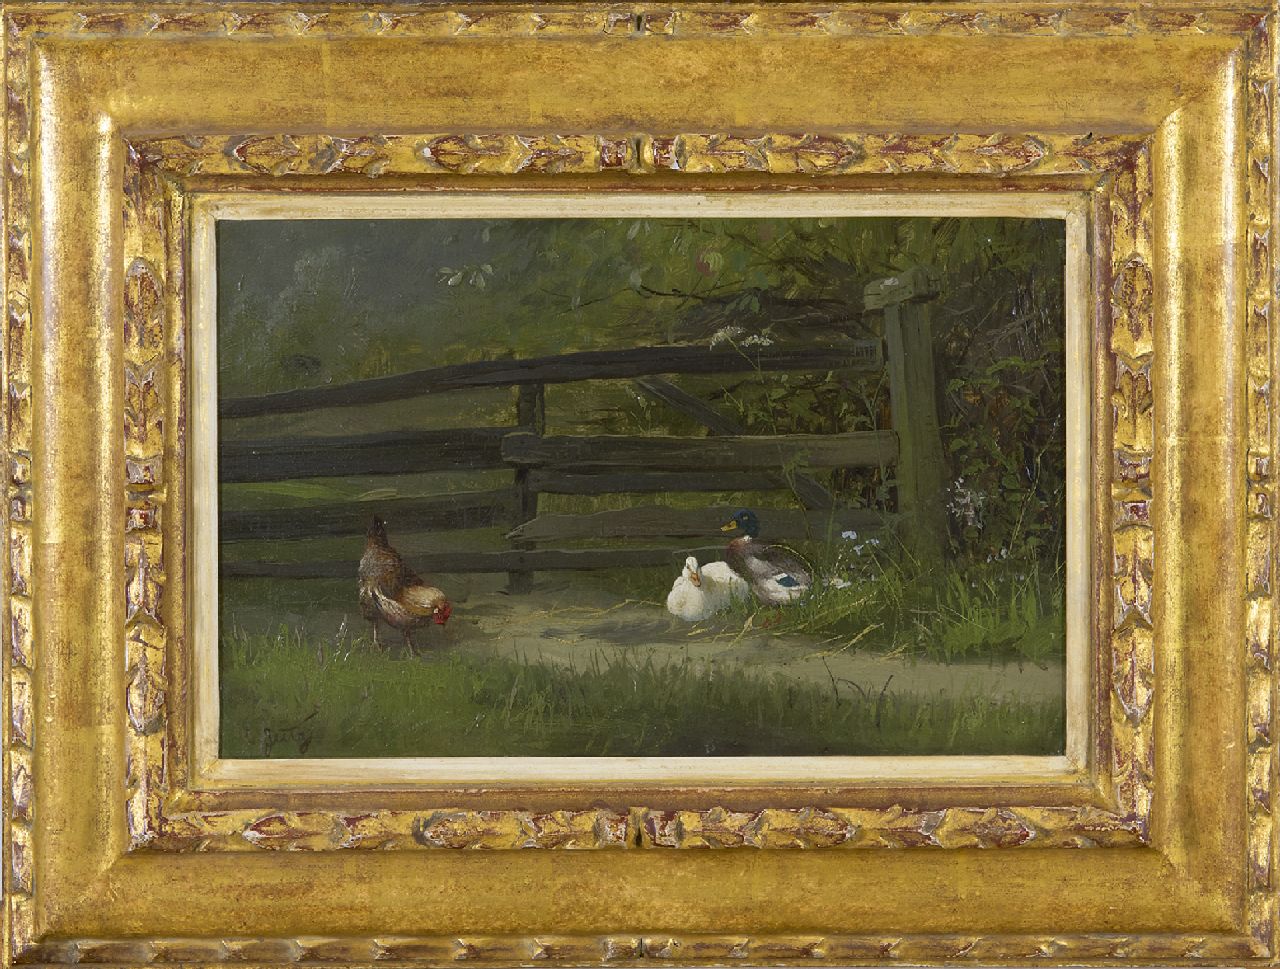 Jutz C.  | Carl Jutz | Schilderijen te koop aangeboden | Kip en eenden bij een tuinhek, olieverf op papier op paneel 21,6 x 32,1 cm, gesigneerd linksonder